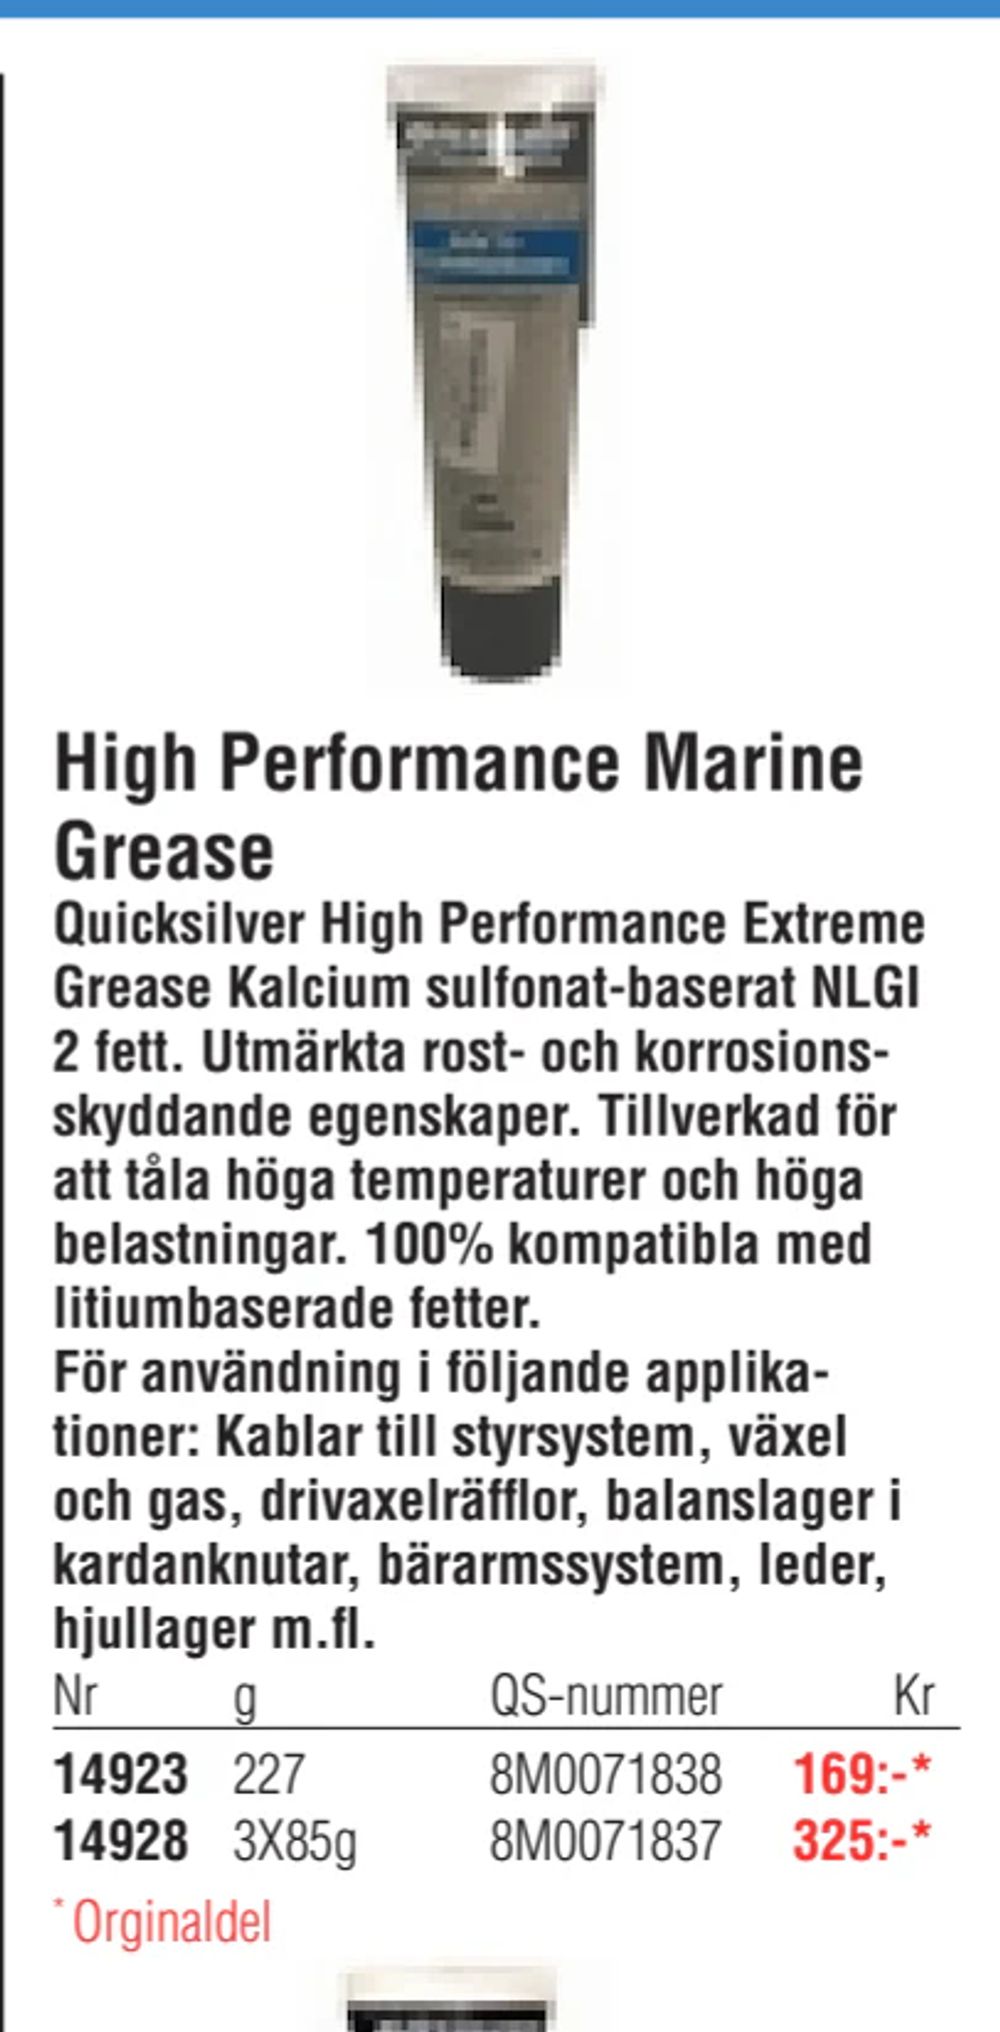 Erbjudanden på High Performance Marine Grease från Erlandsons Brygga för 169 kr